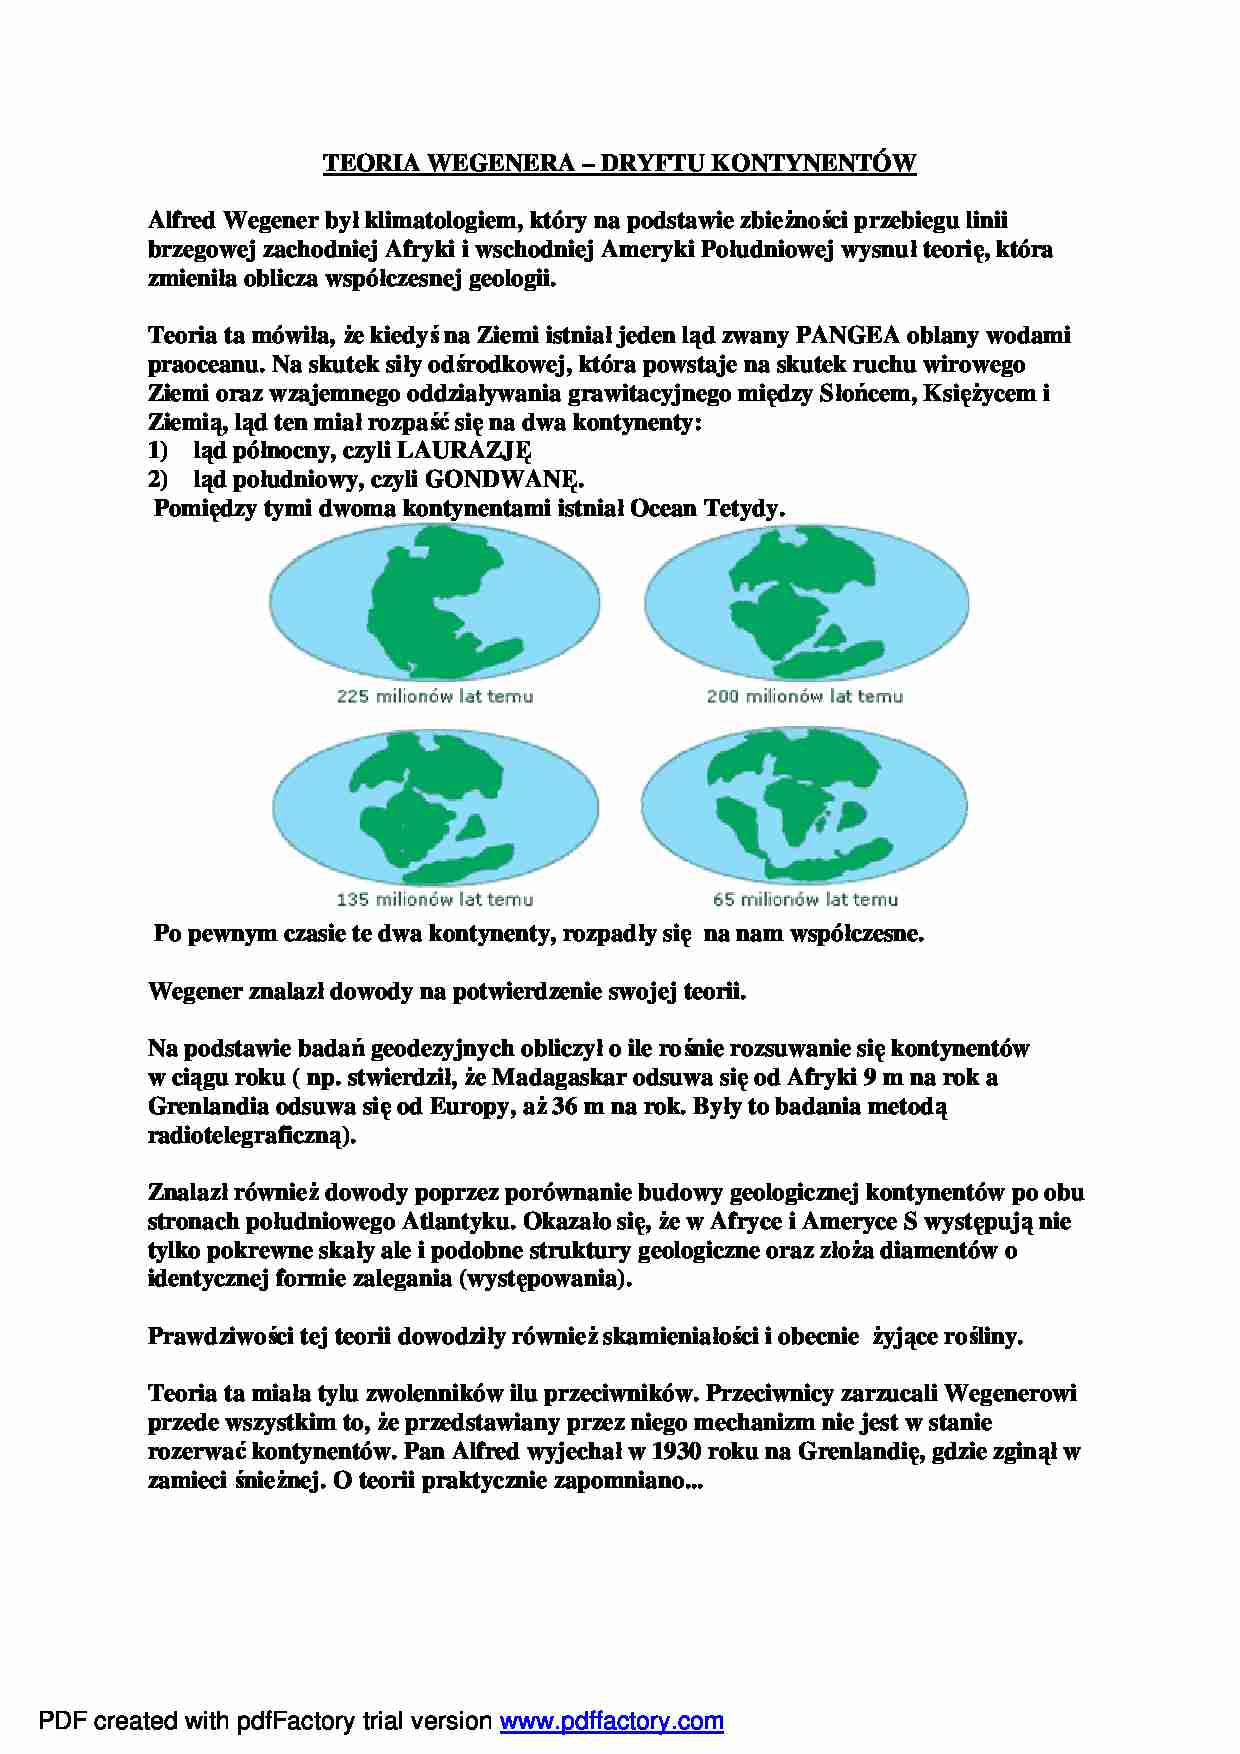 Teoria wegenera dryftu kontynentów - wykład - strona 1